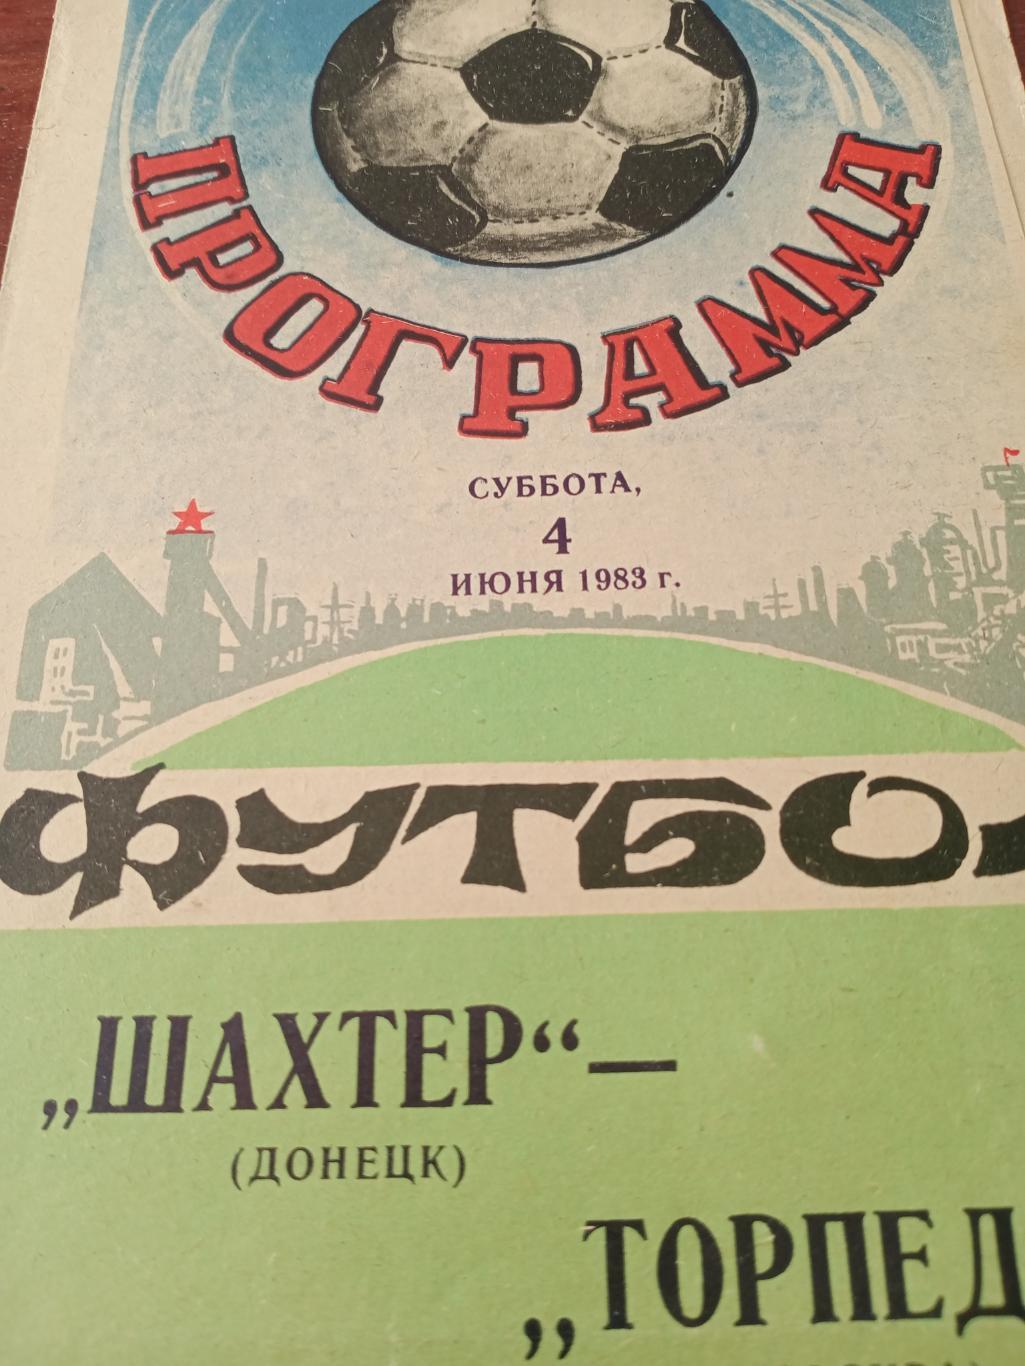 Шахтер Донецк - Торпедо Москва. 4.06.1983 год